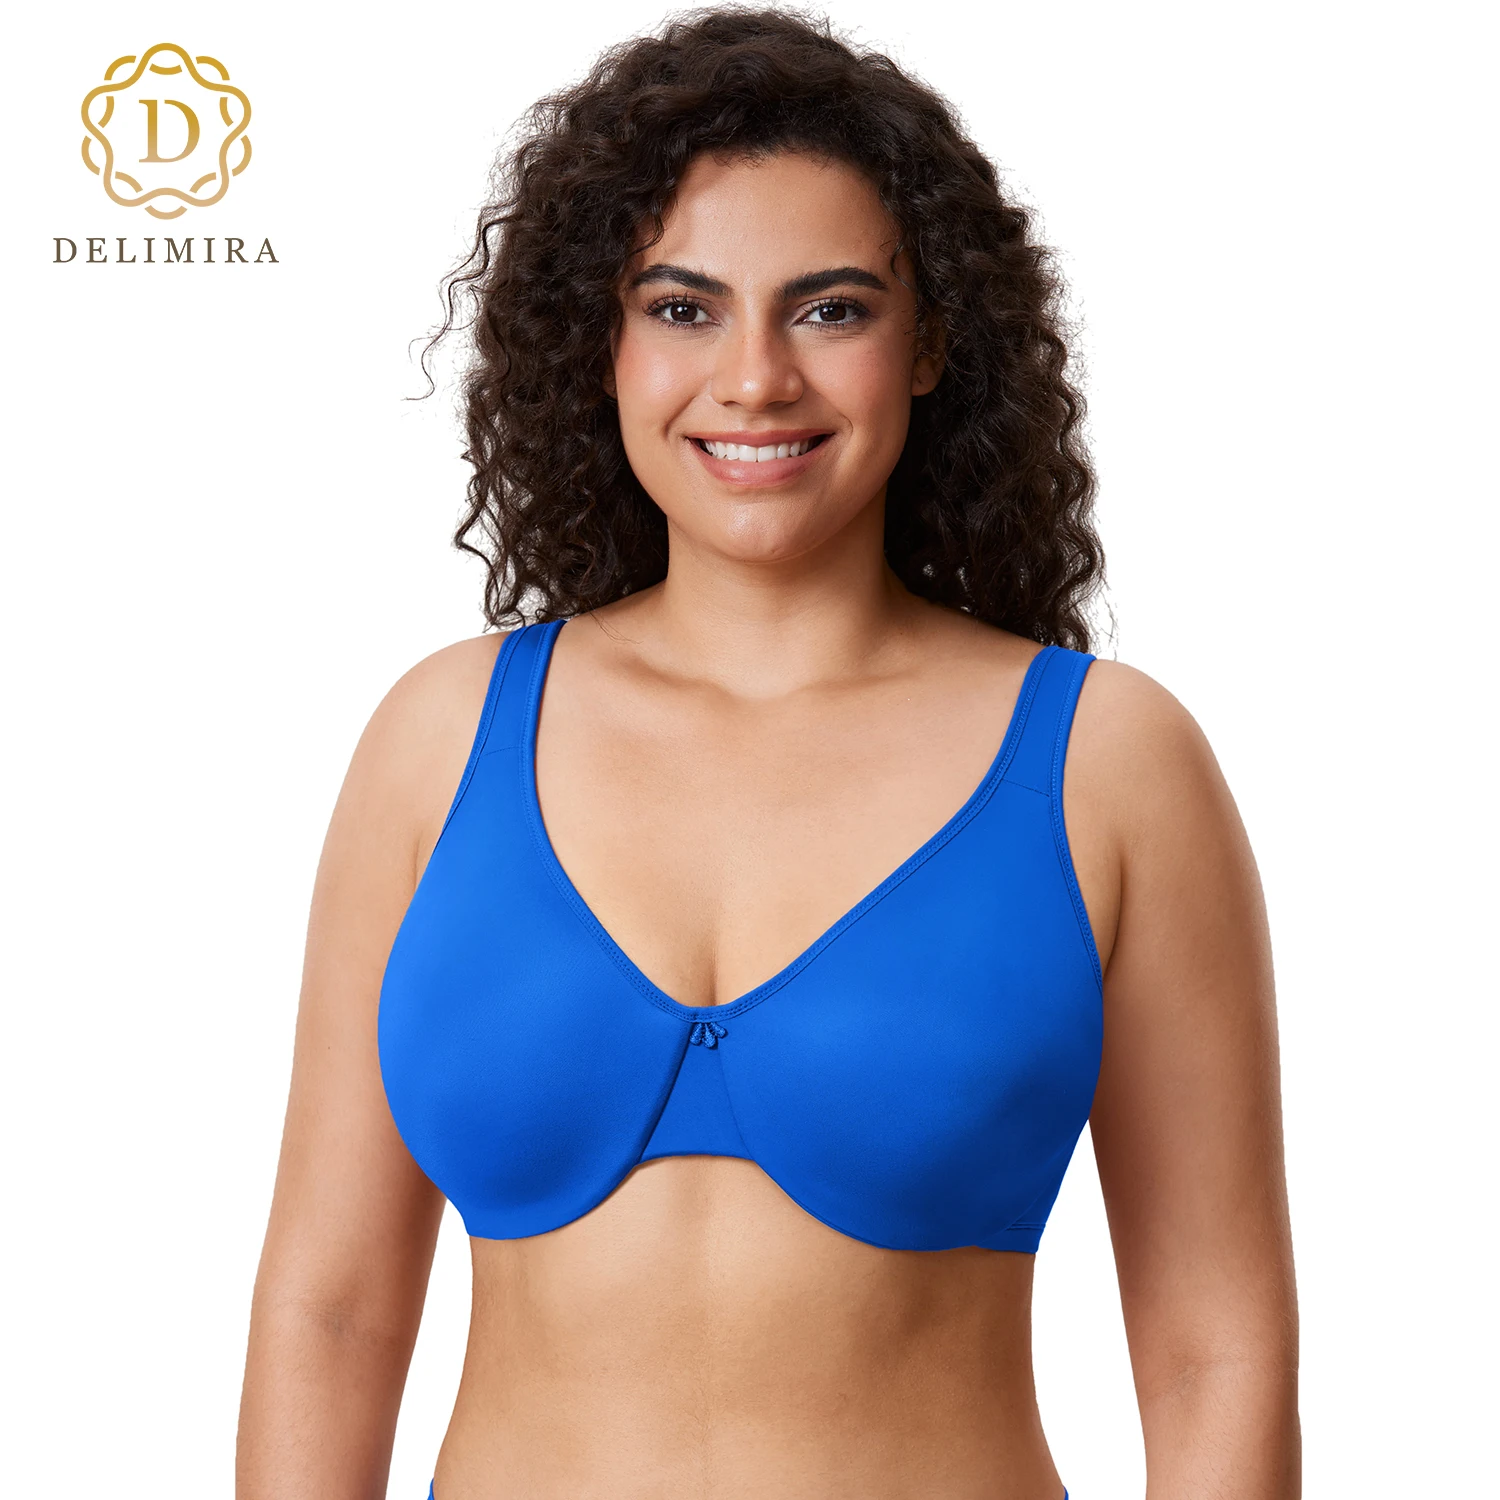 

DELIMIRA Women's Minimizer Bra Plus Size Underwire Smooth Full Coverage Seamless Bras D DD E F G